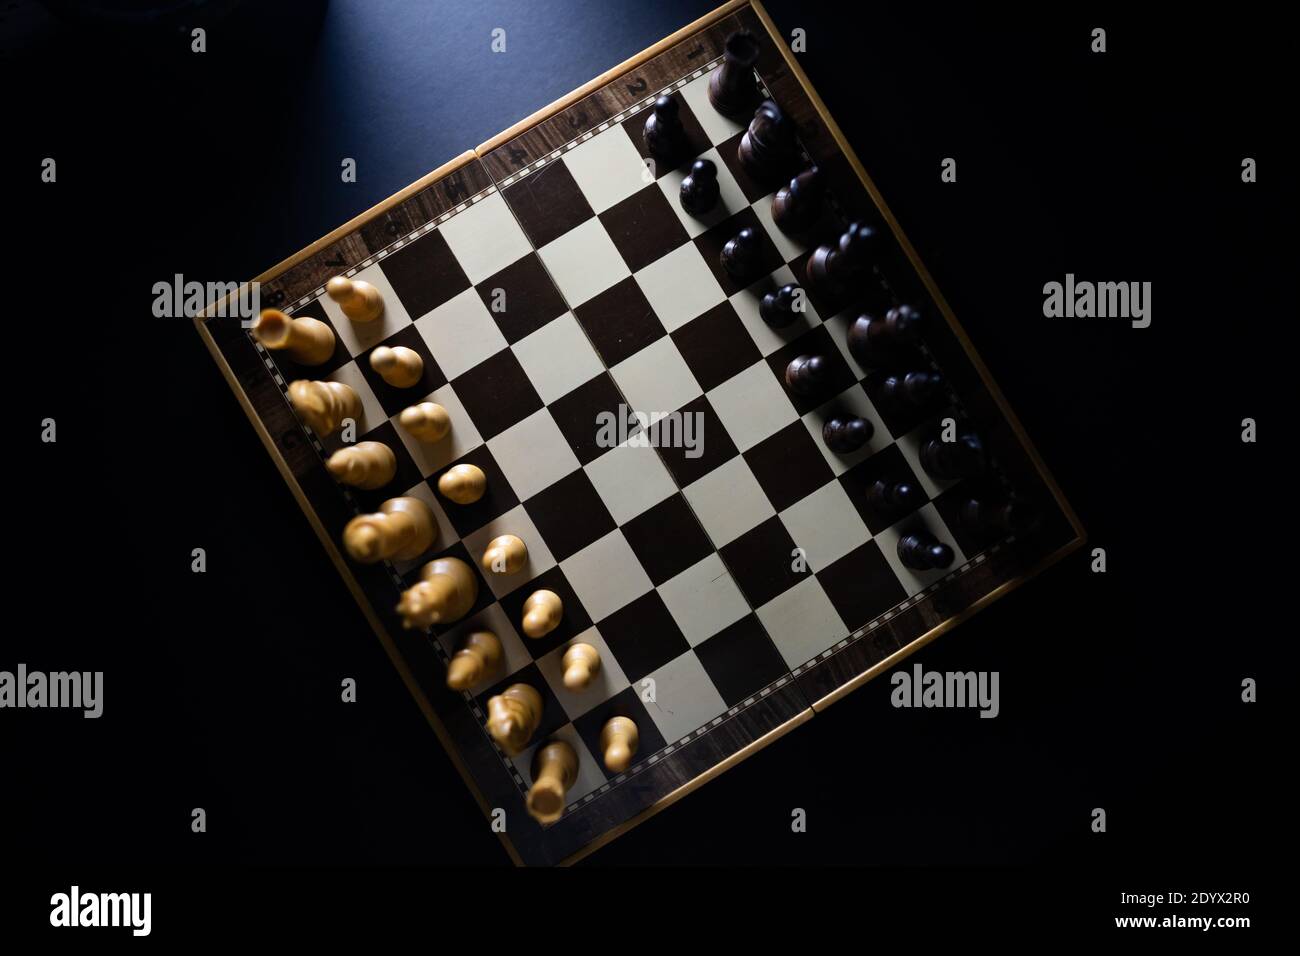 Vista alta dei pezzi di scacchi su una scacchiera in uno stile scuro. Foto Stock